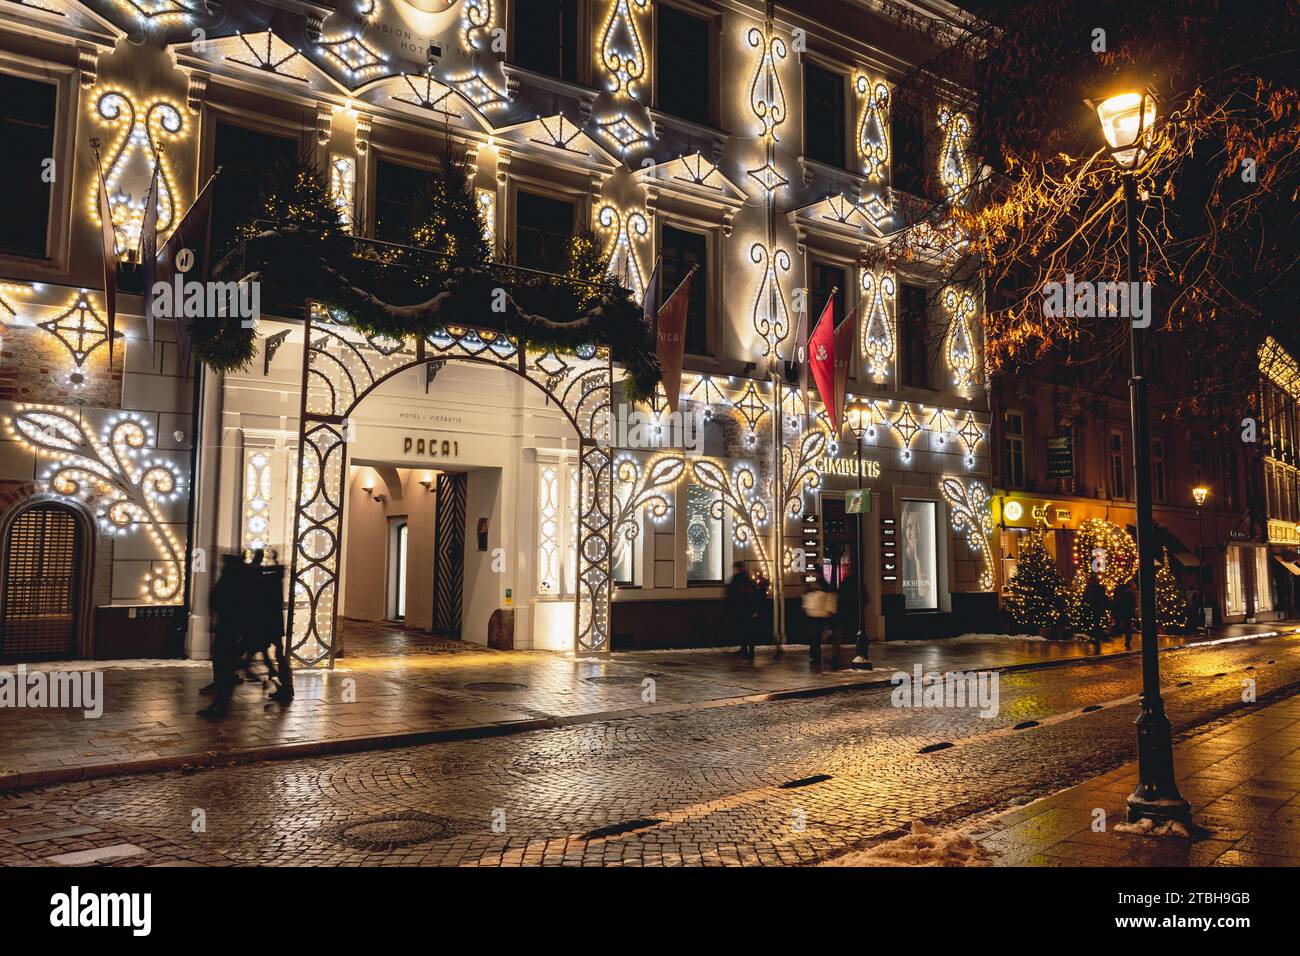 Belle entrée et fenêtres d'un hôtel avec décorations de Noël confortables, couronne, guirlandes et lumières dans la vieille ville de Vilnius, capitale de la Lituanie Banque D'Images